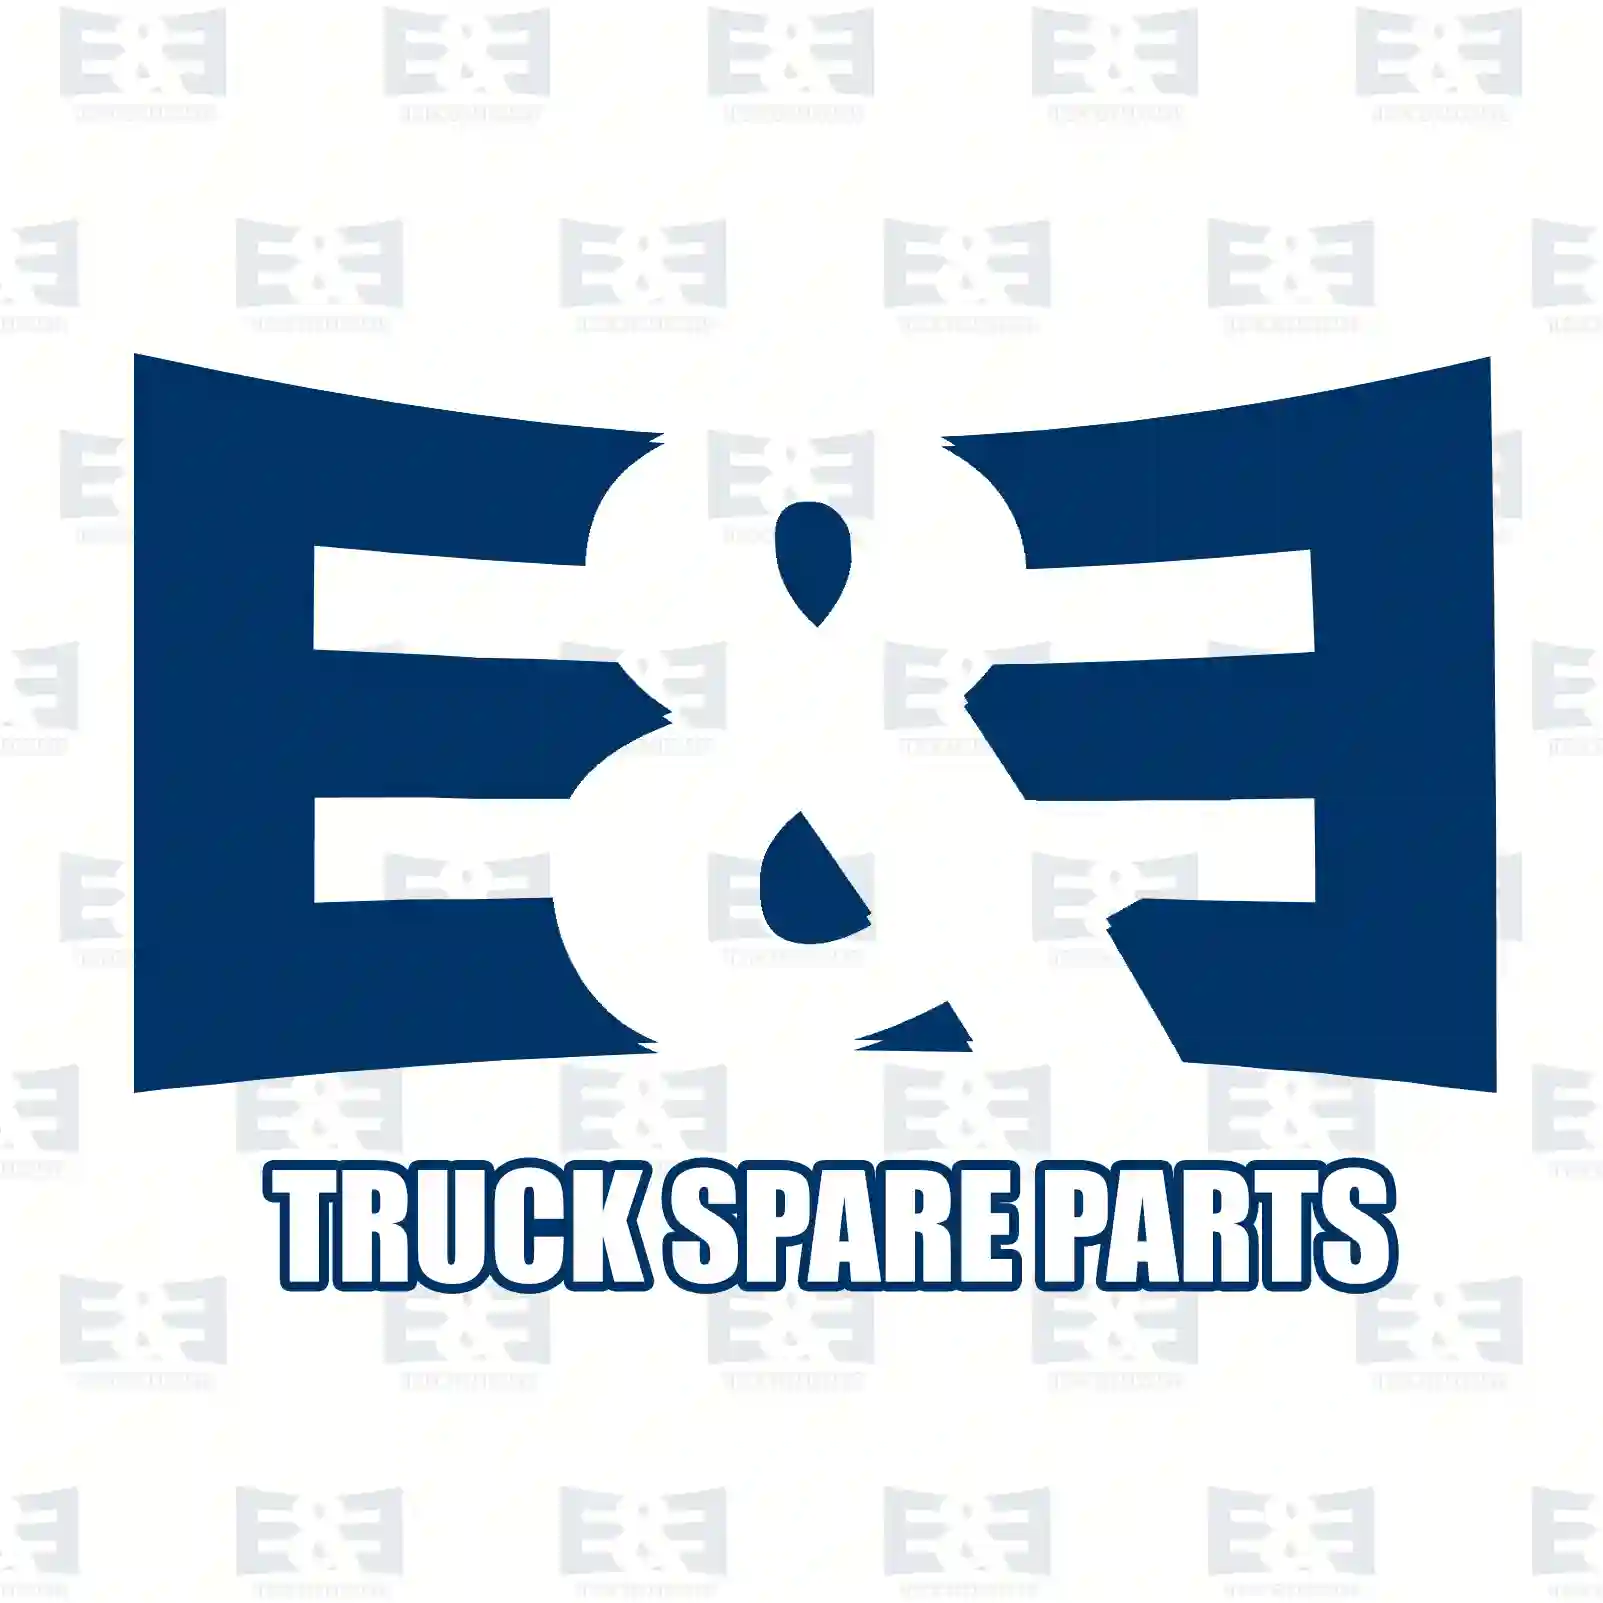 Front grill, lower, 2E2280306, 93937670, ZG60810-0008 ||  2E2280306 E&E Truck Spare Parts | Truck Spare Parts, Auotomotive Spare Parts Front grill, lower, 2E2280306, 93937670, ZG60810-0008 ||  2E2280306 E&E Truck Spare Parts | Truck Spare Parts, Auotomotive Spare Parts